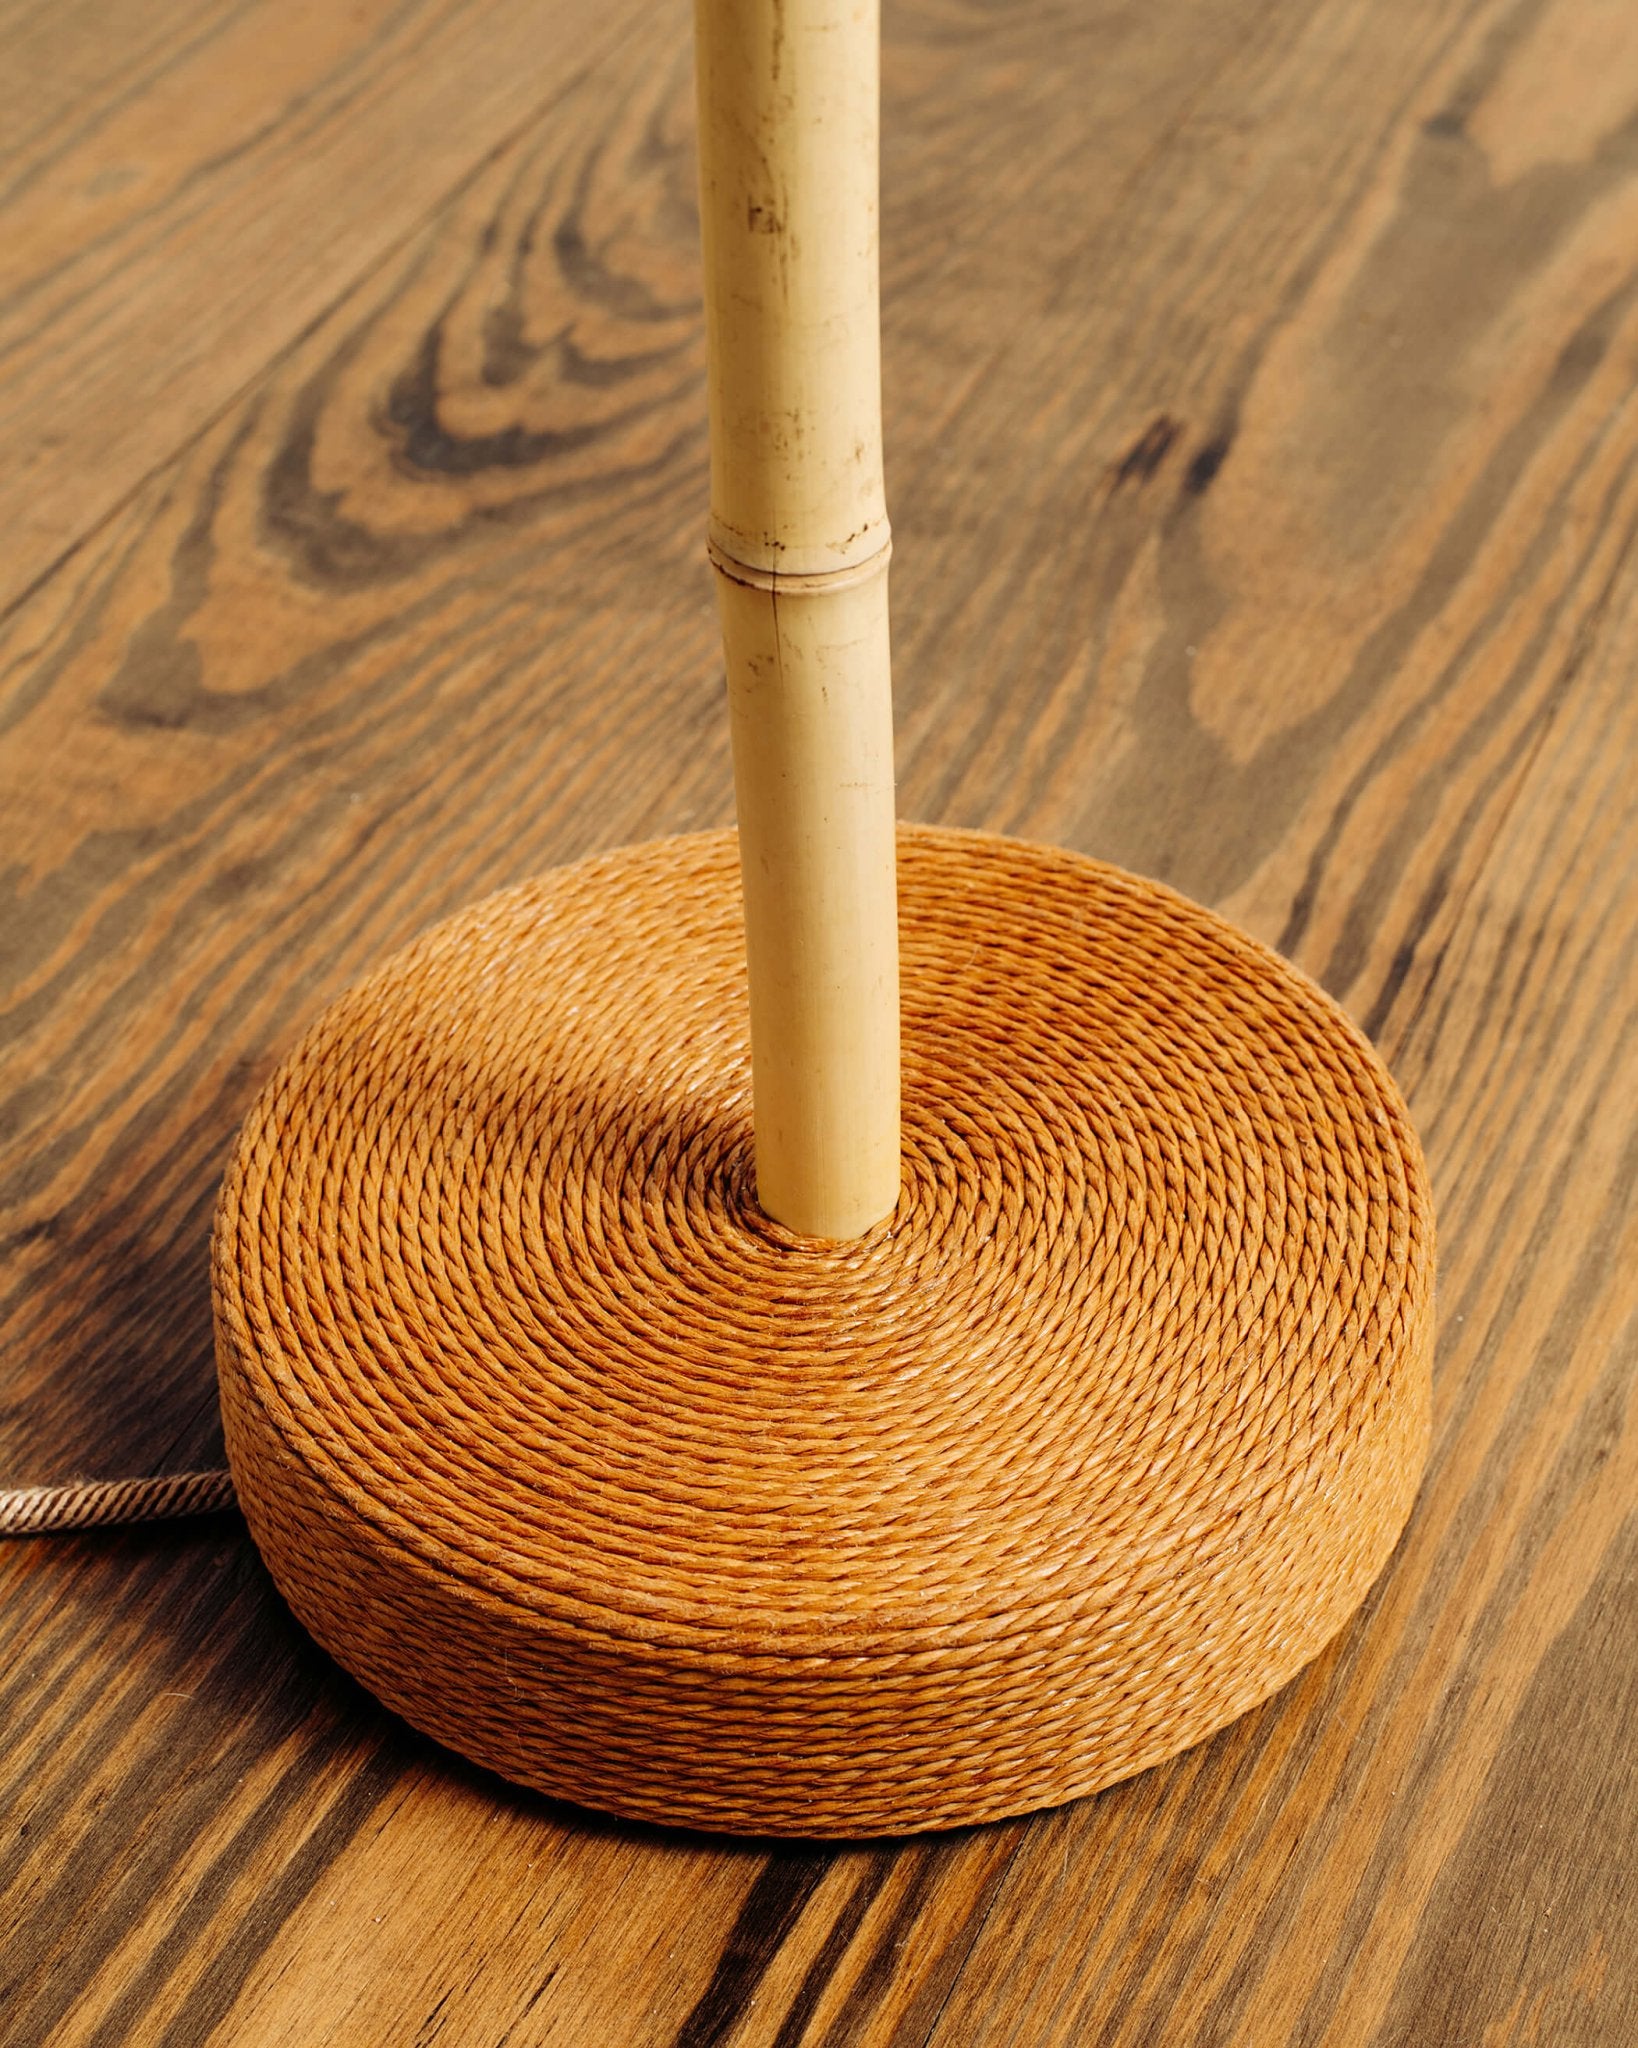 'Pagoda' Bamboo Floor Lamp with 'Pangolin' Shade and Coiled Seagrass Base — Model No. 011 - Tennant New York